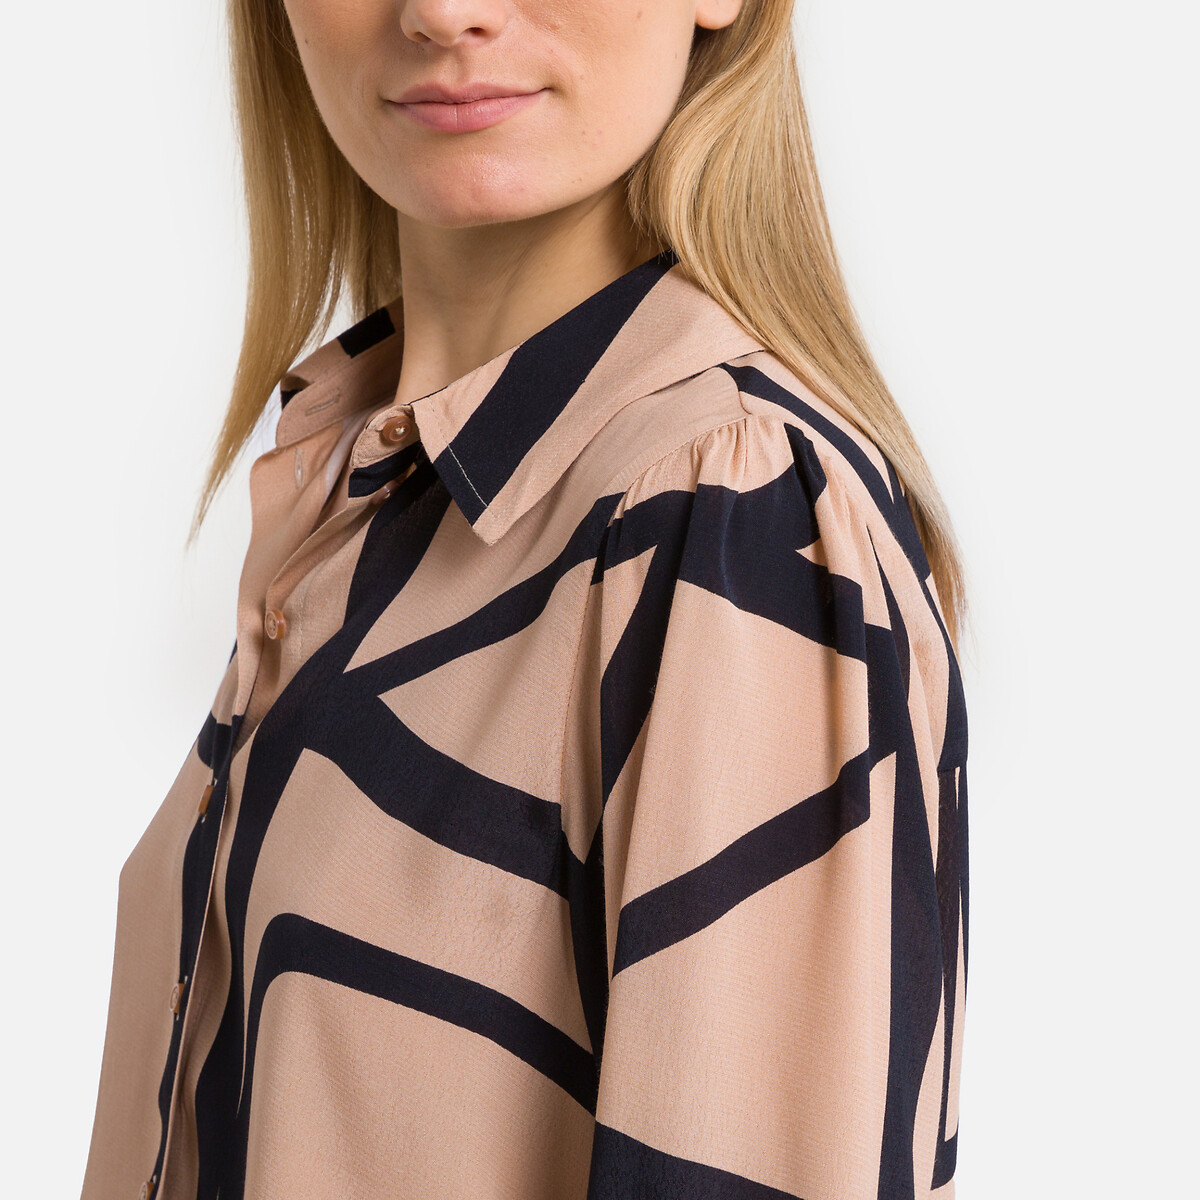 Блузка С принтом L бежевый LaRedoute, размер L - фото 2